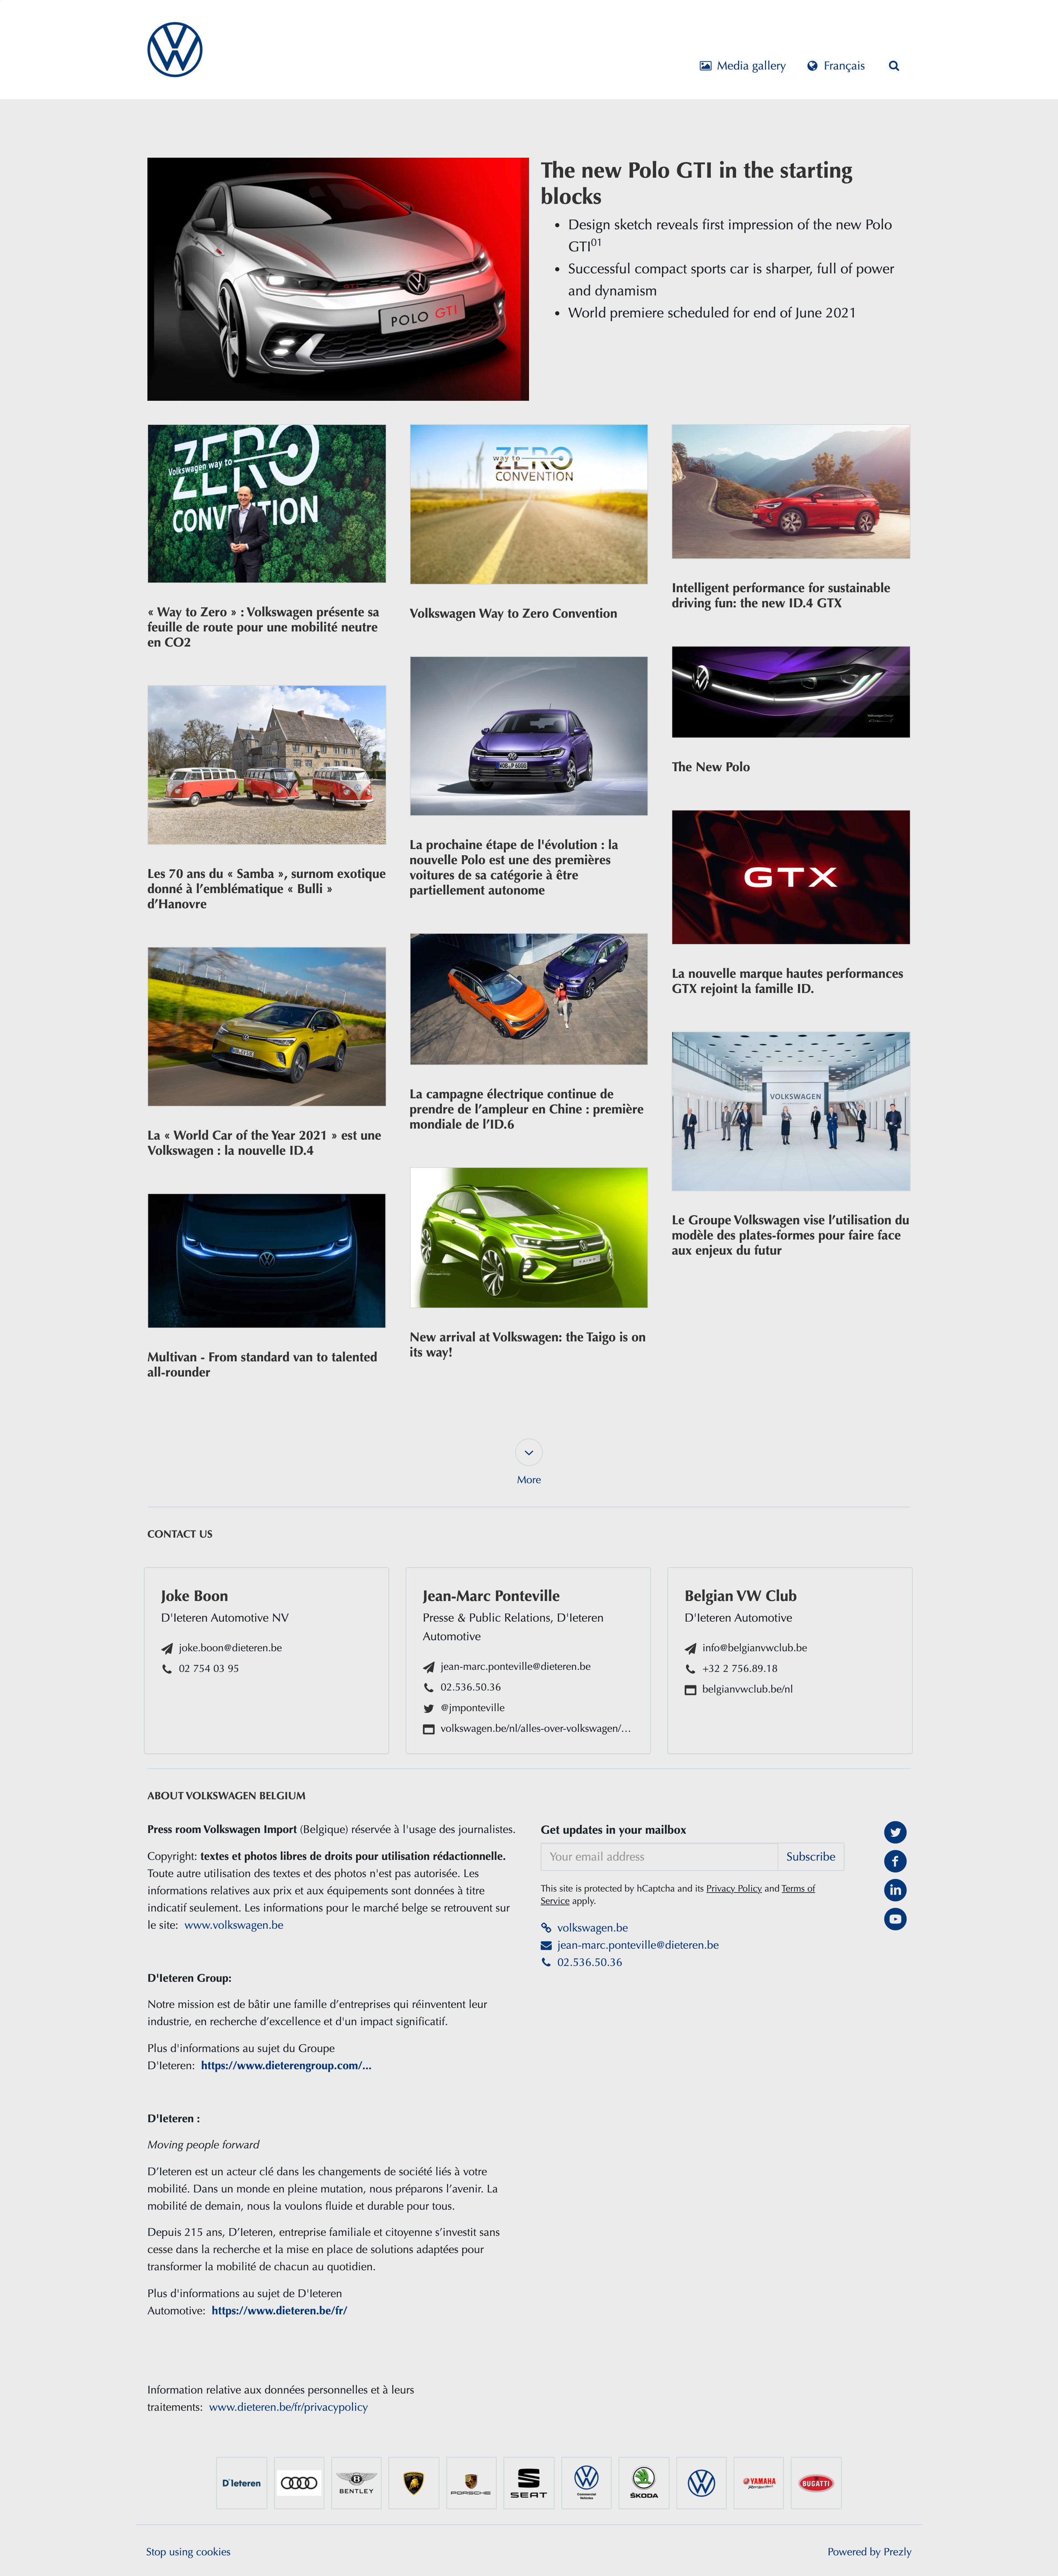 Volkswagen's news hub